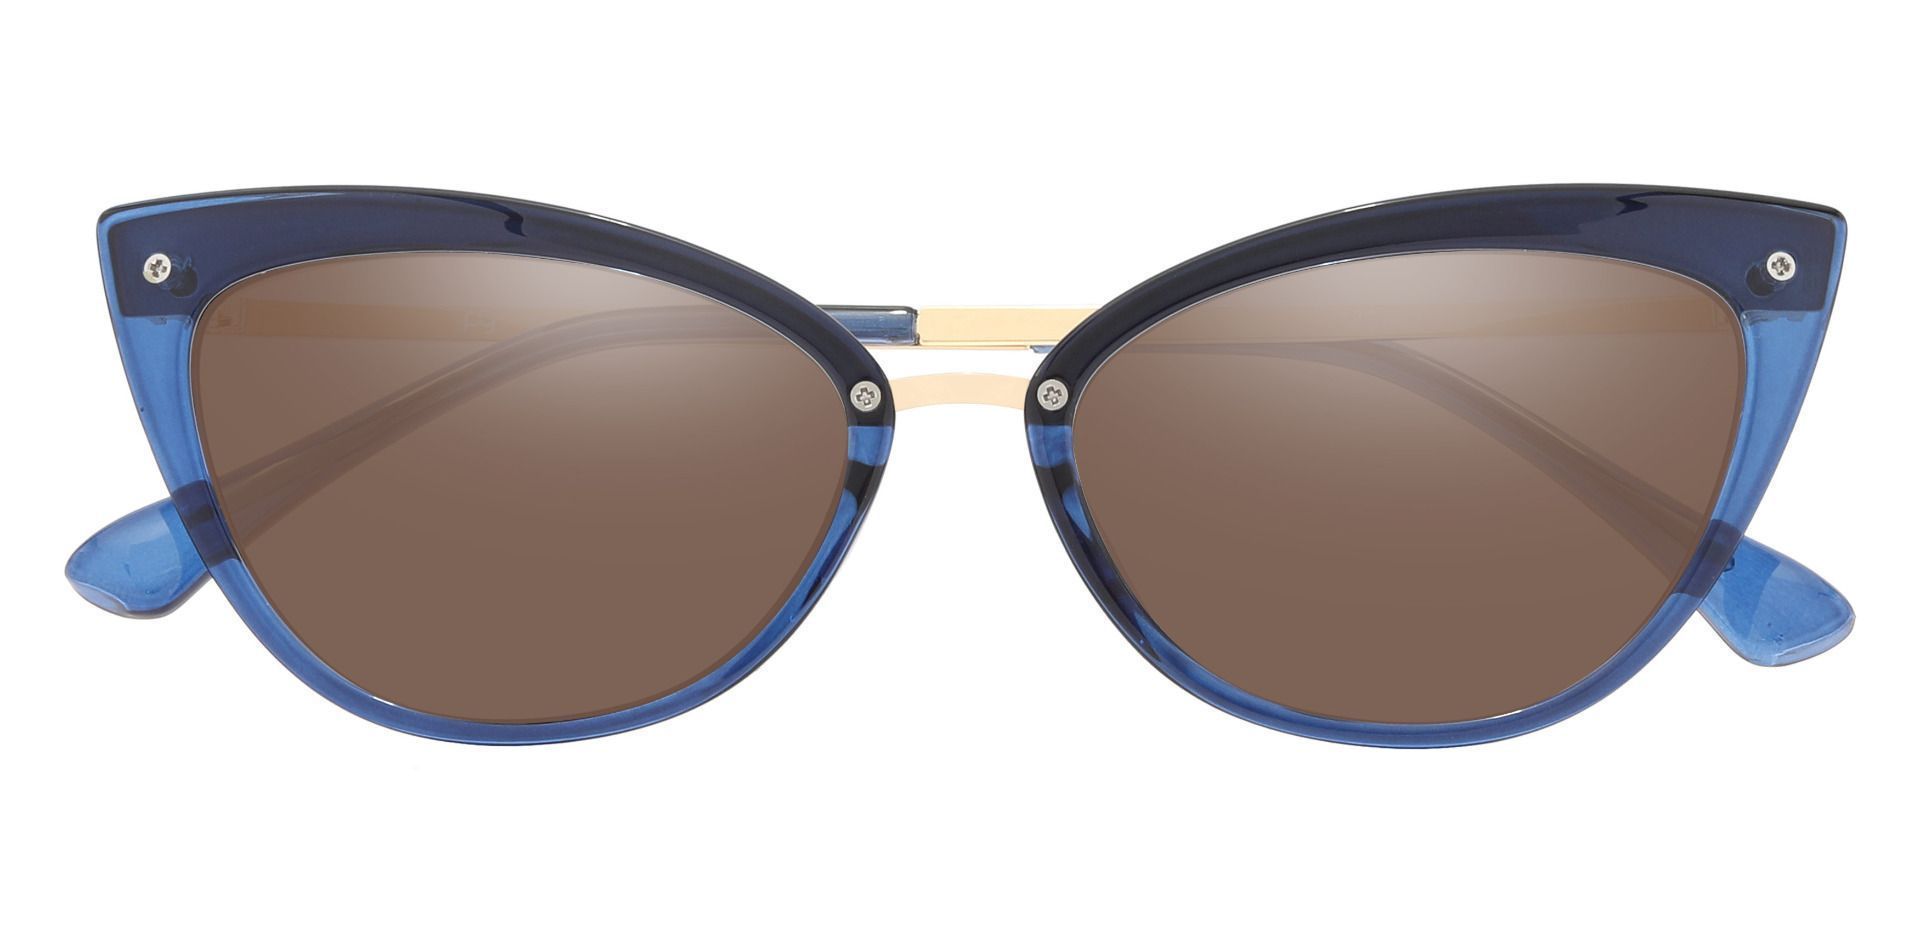 Glenda Cat Eye Prescription Sunglasses - Blue Frame With Brown Lenses